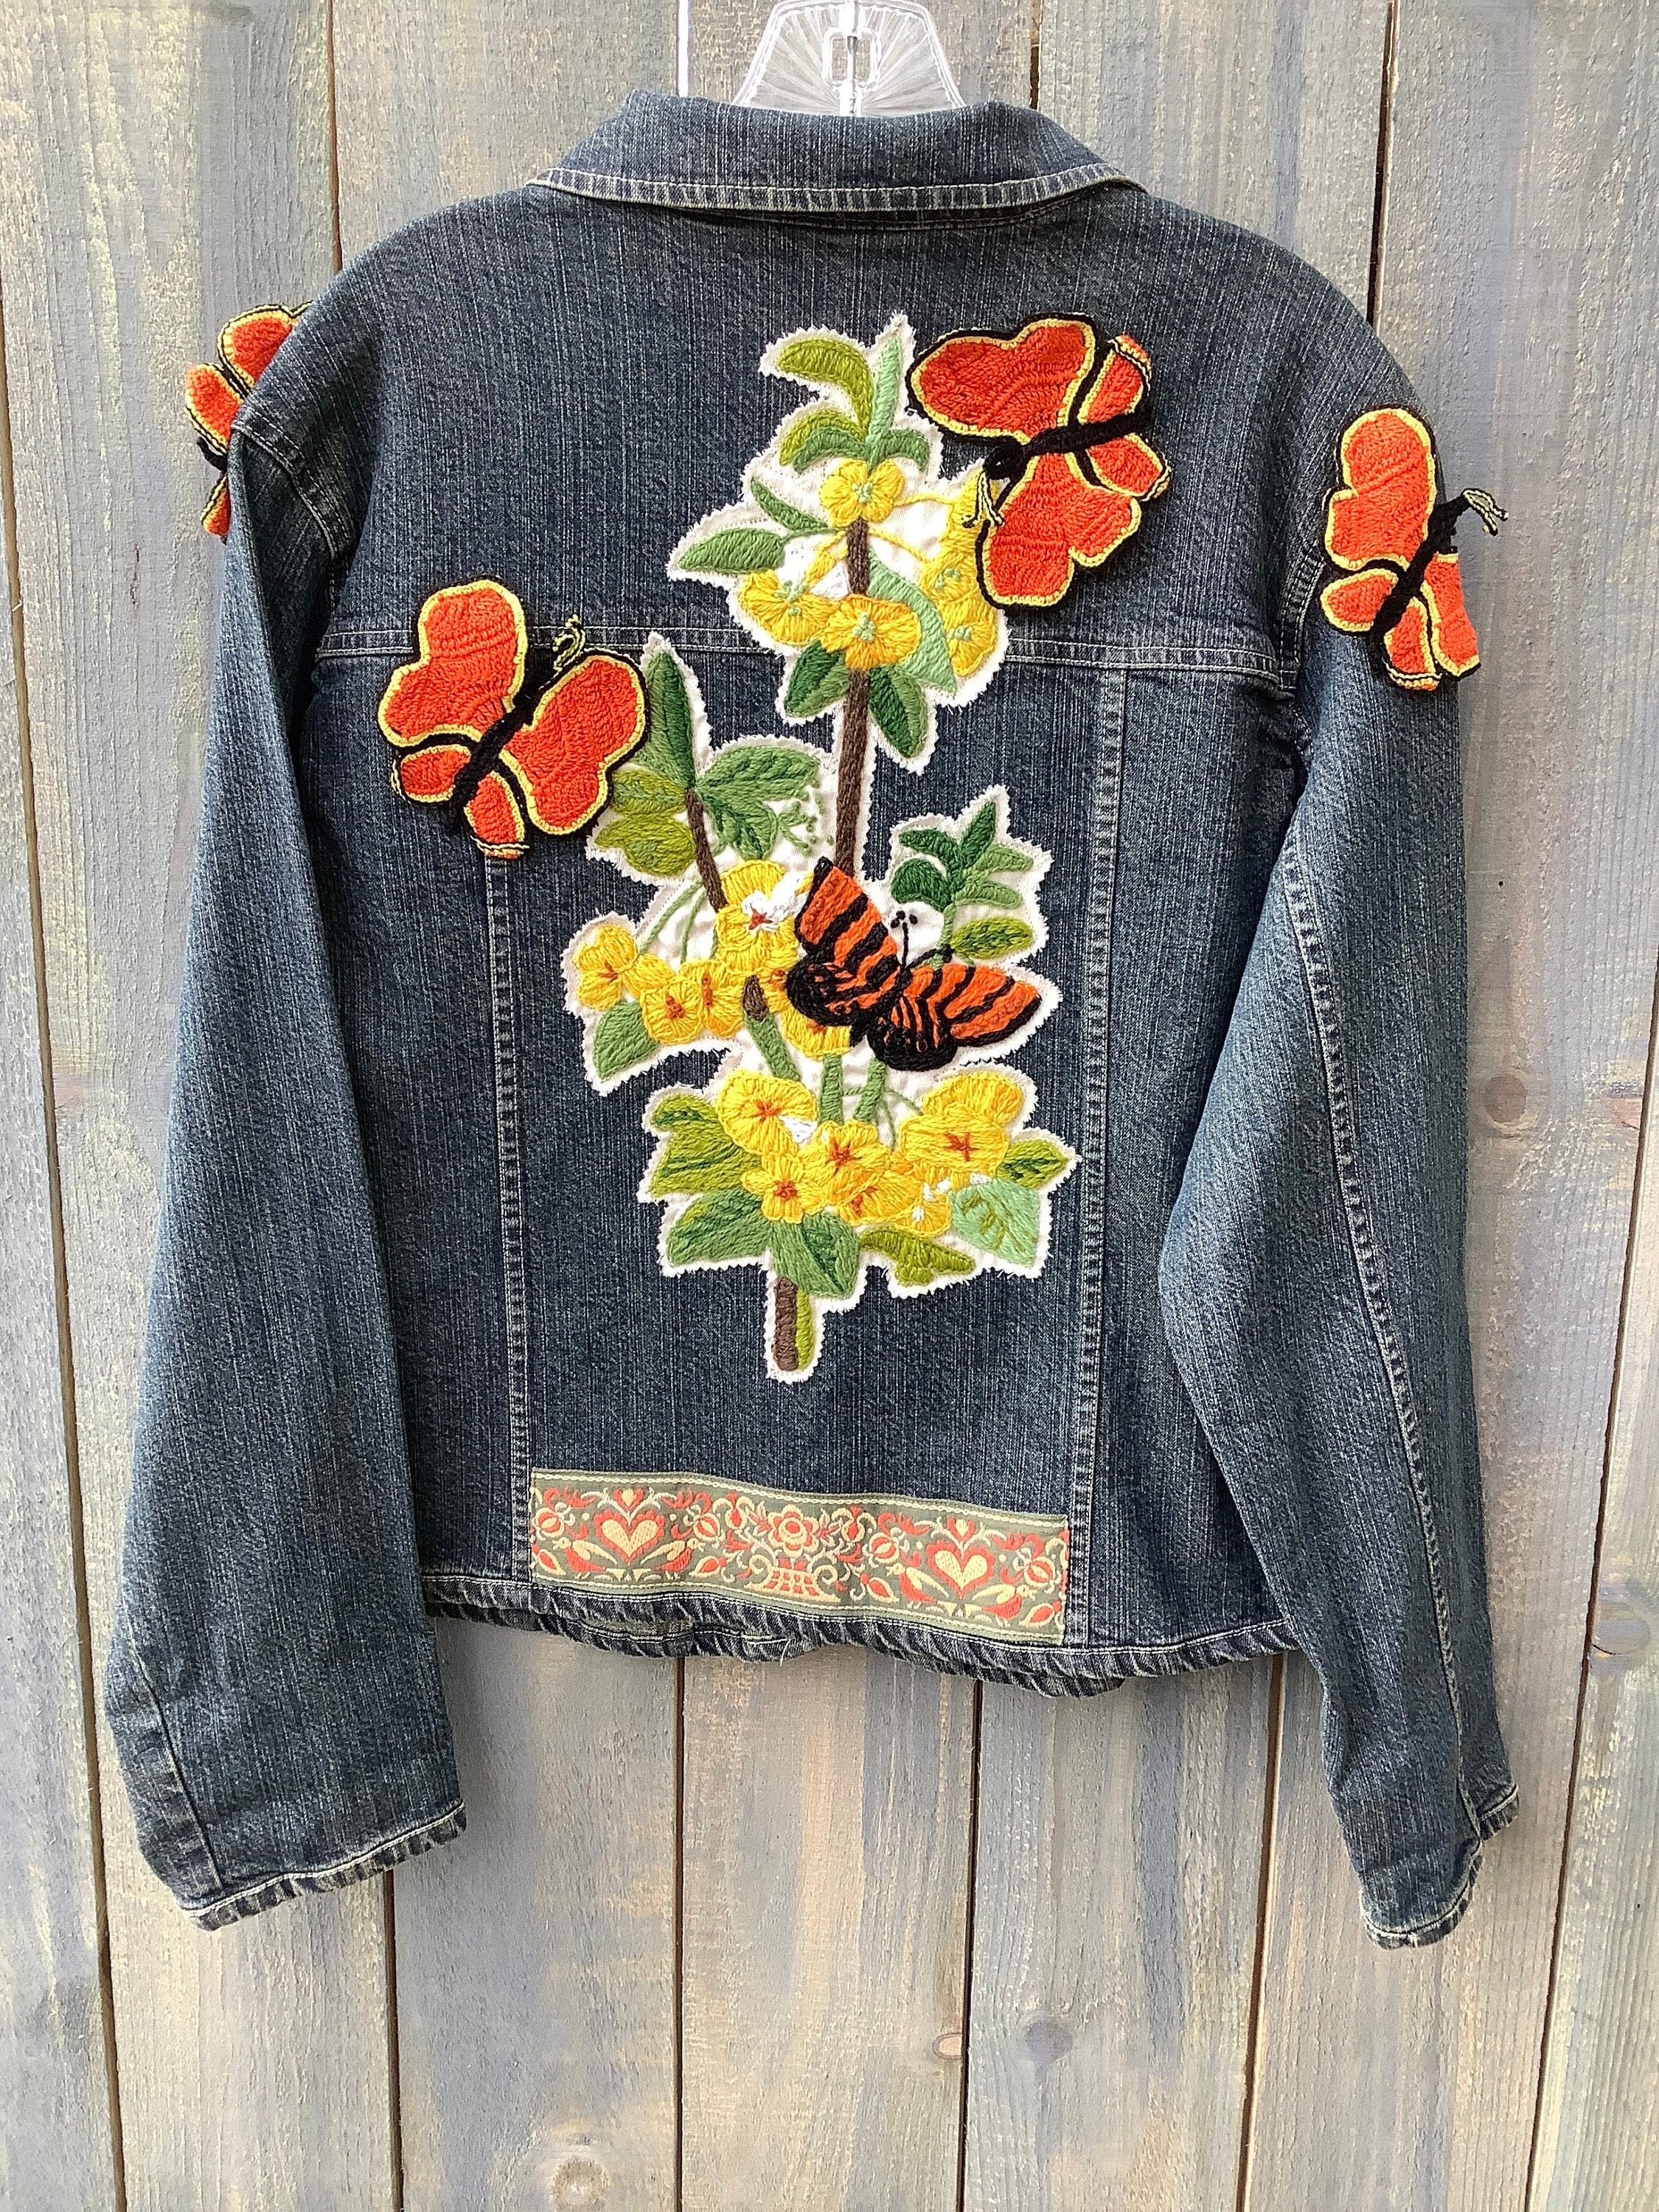 Embellished Denim Jean Jacket Floral Butterfly Crewel Work 